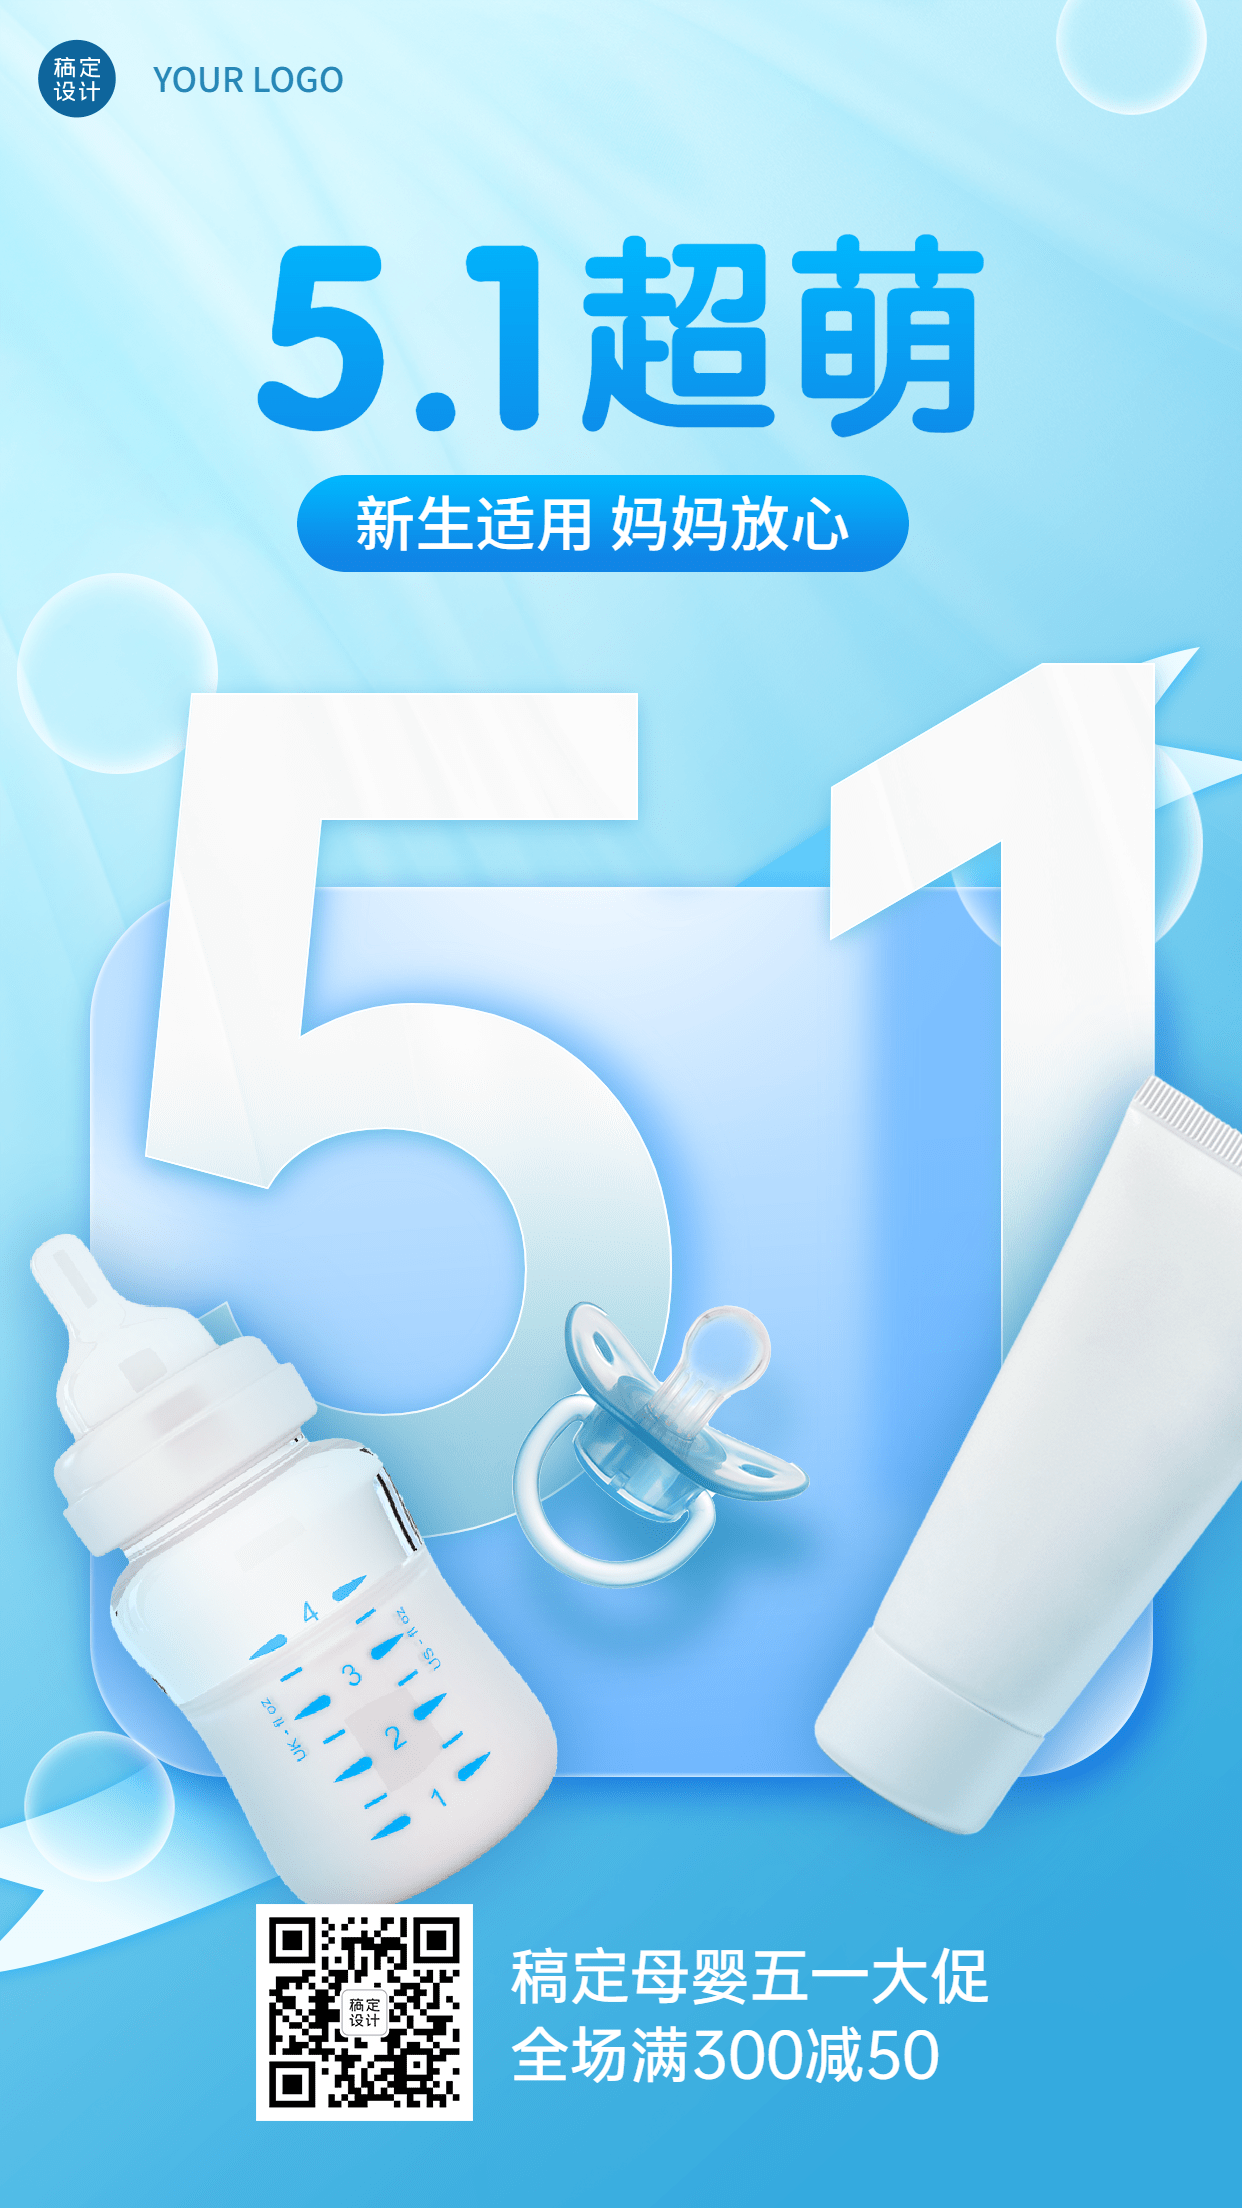 微商母婴劳动节产品营销51数字背景手机海报